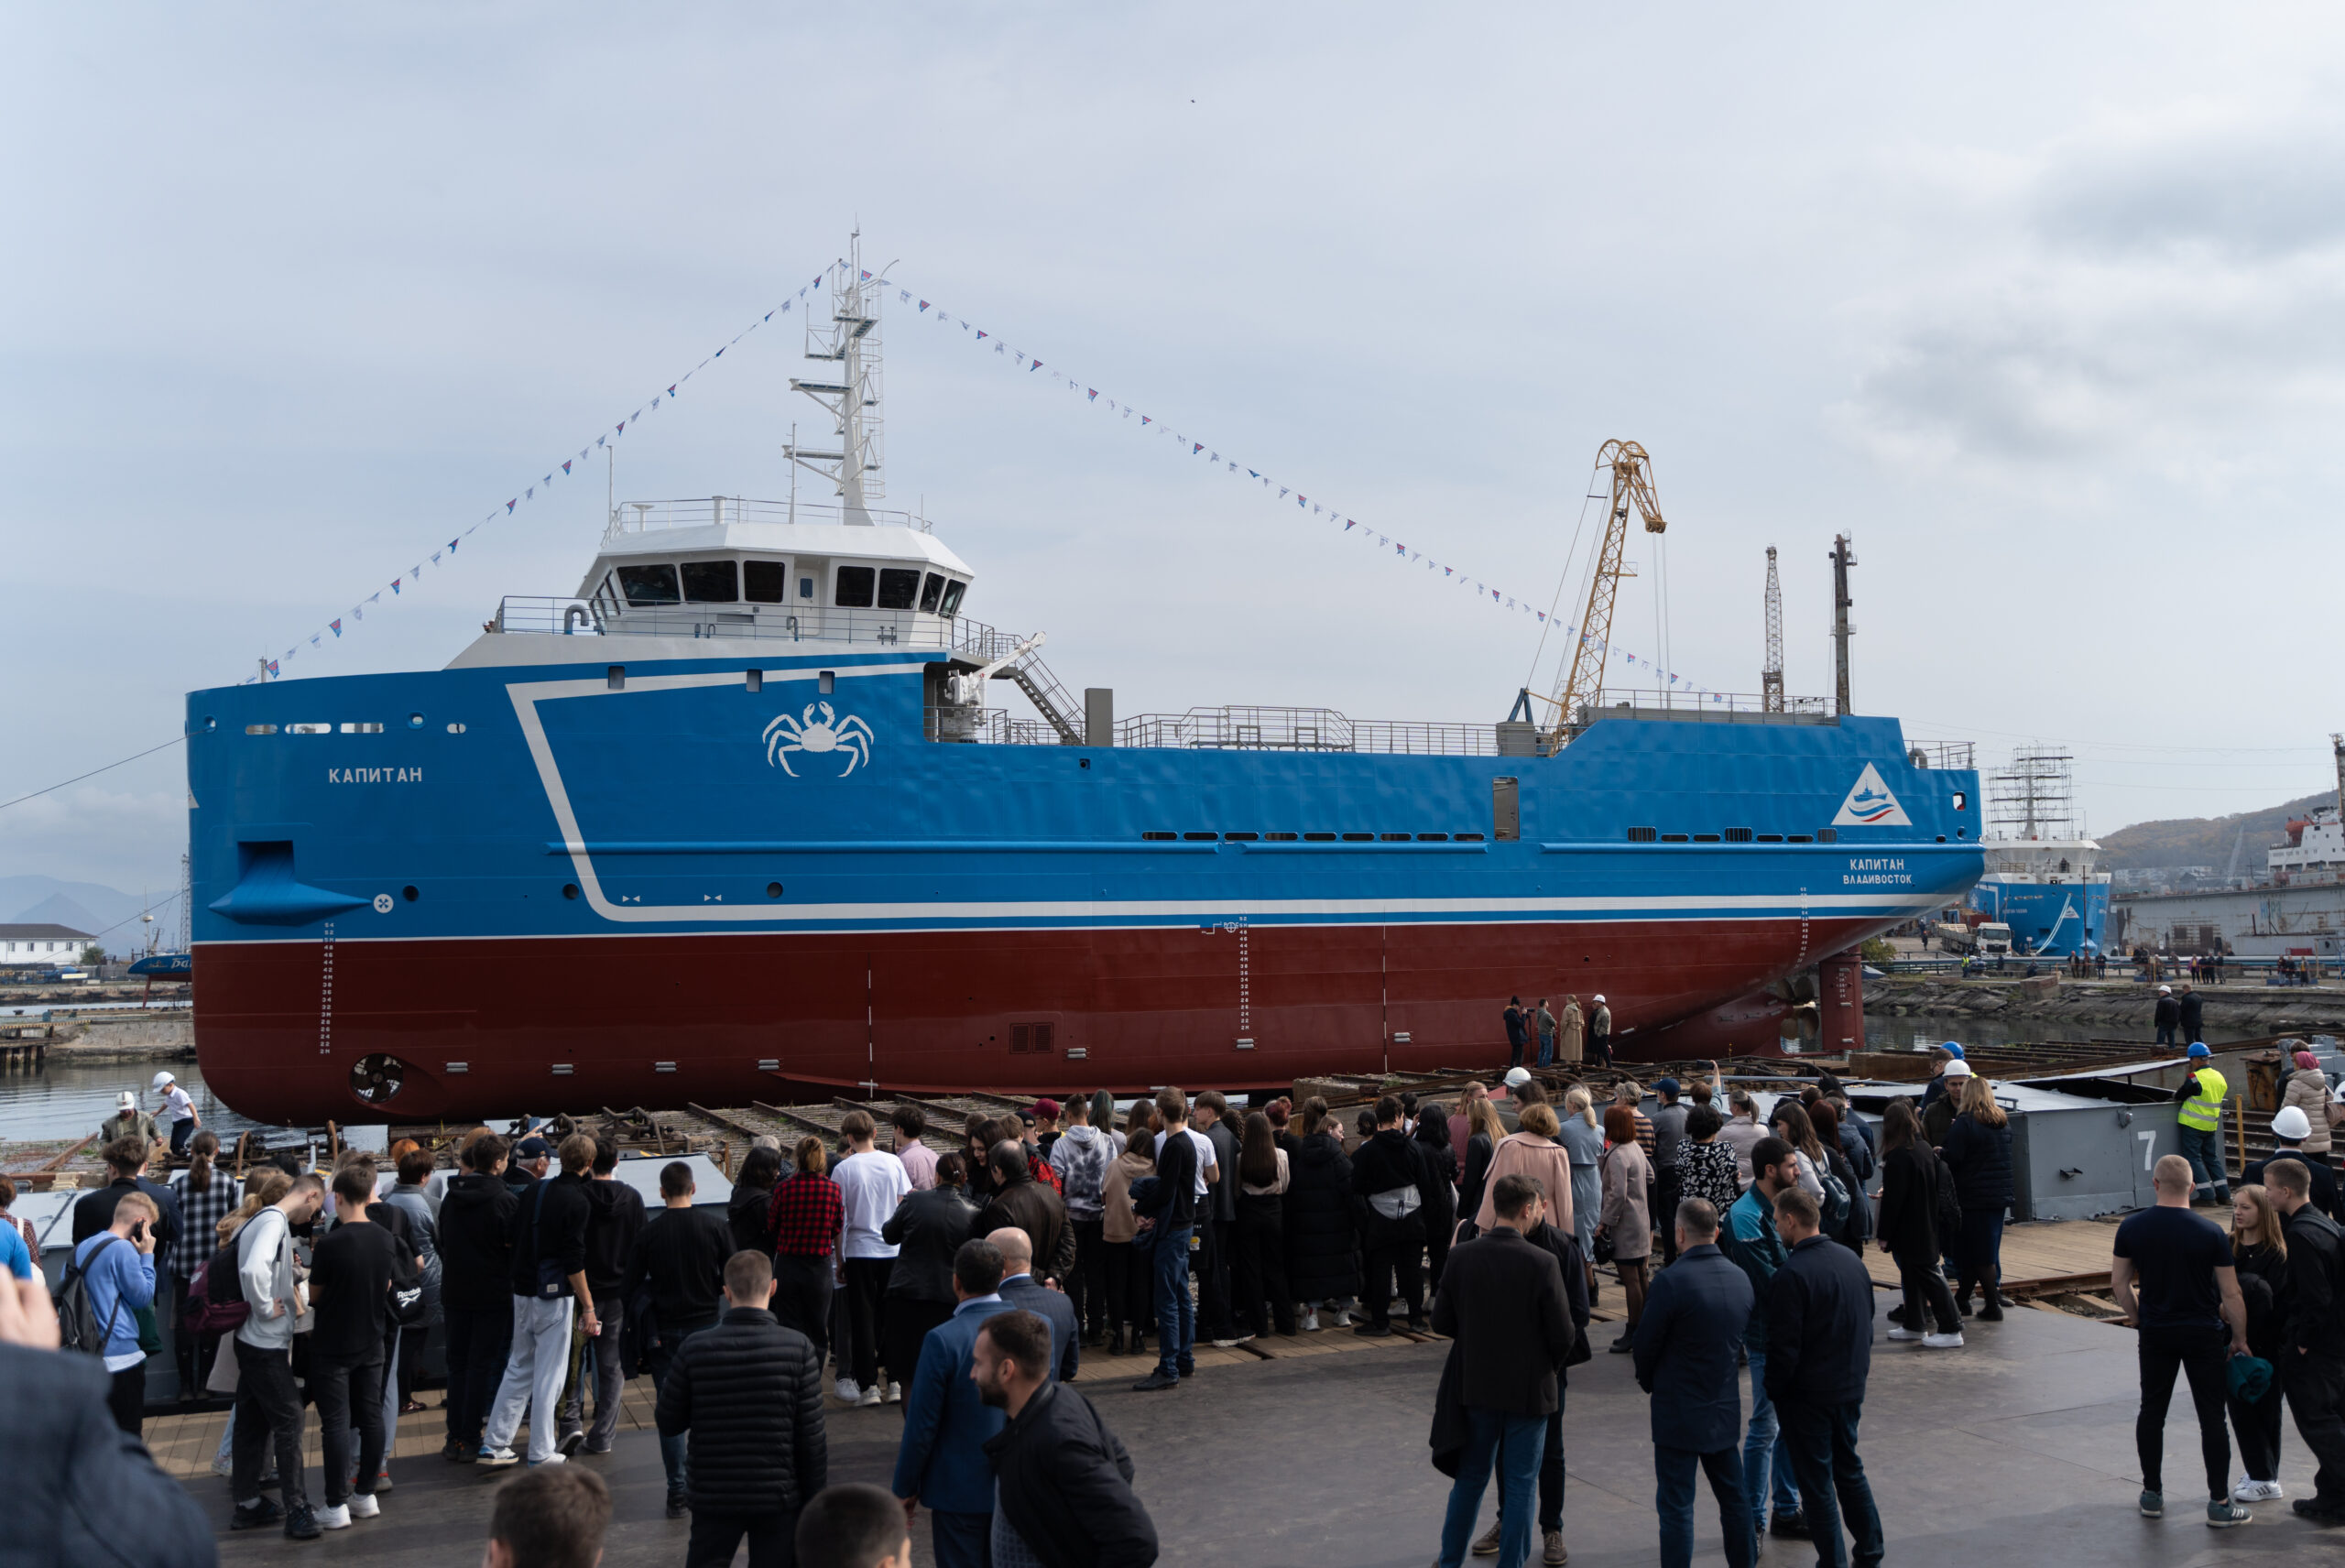 Находкинский судоремонтный завод строит краболовы для «Антея» по графику: на воду спущено уже третье судно